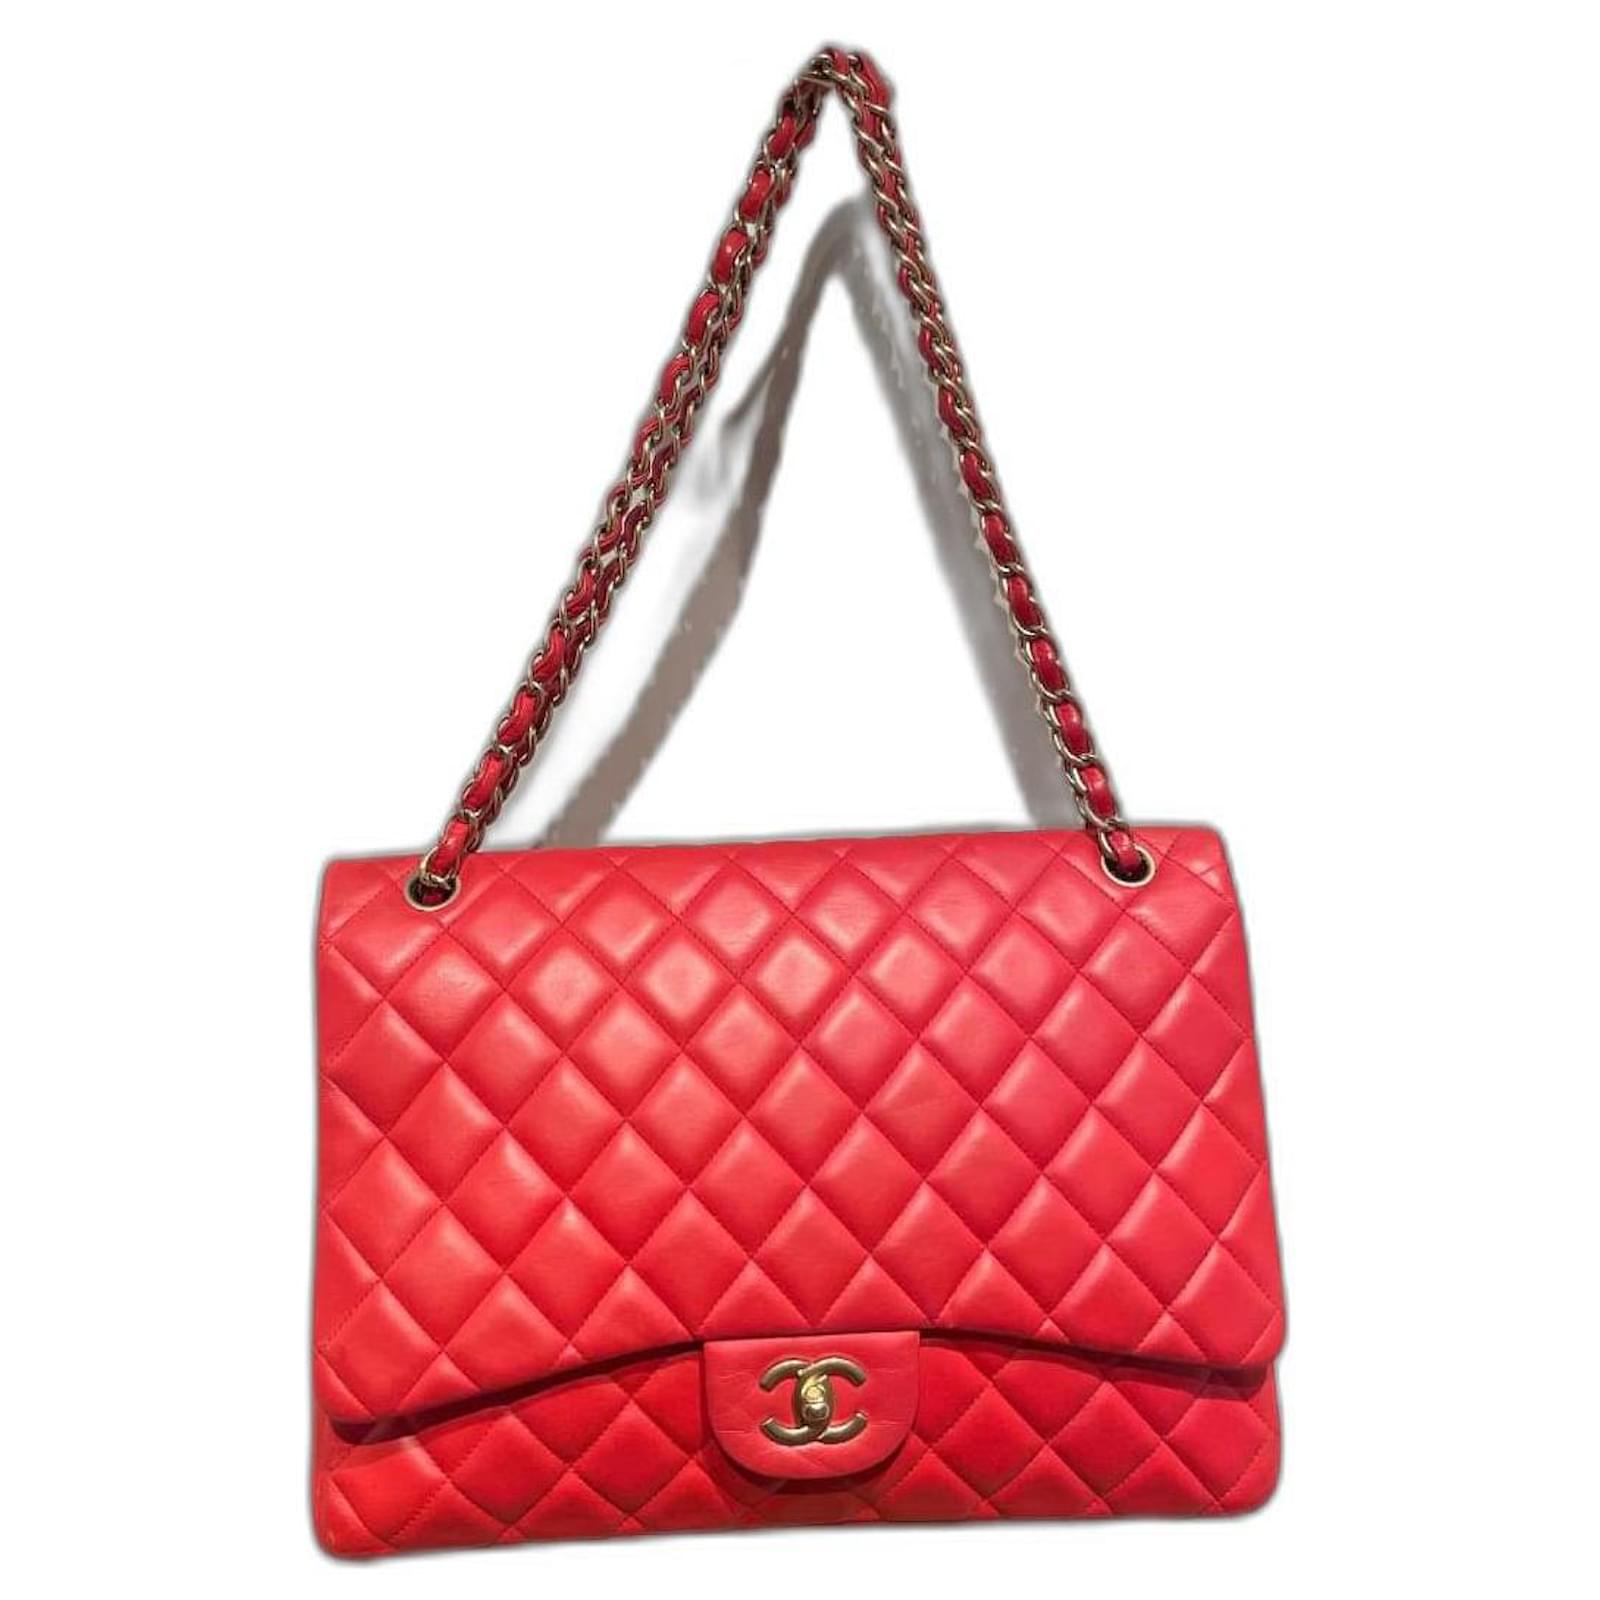 Handbags Chanel Maxi Jumbo